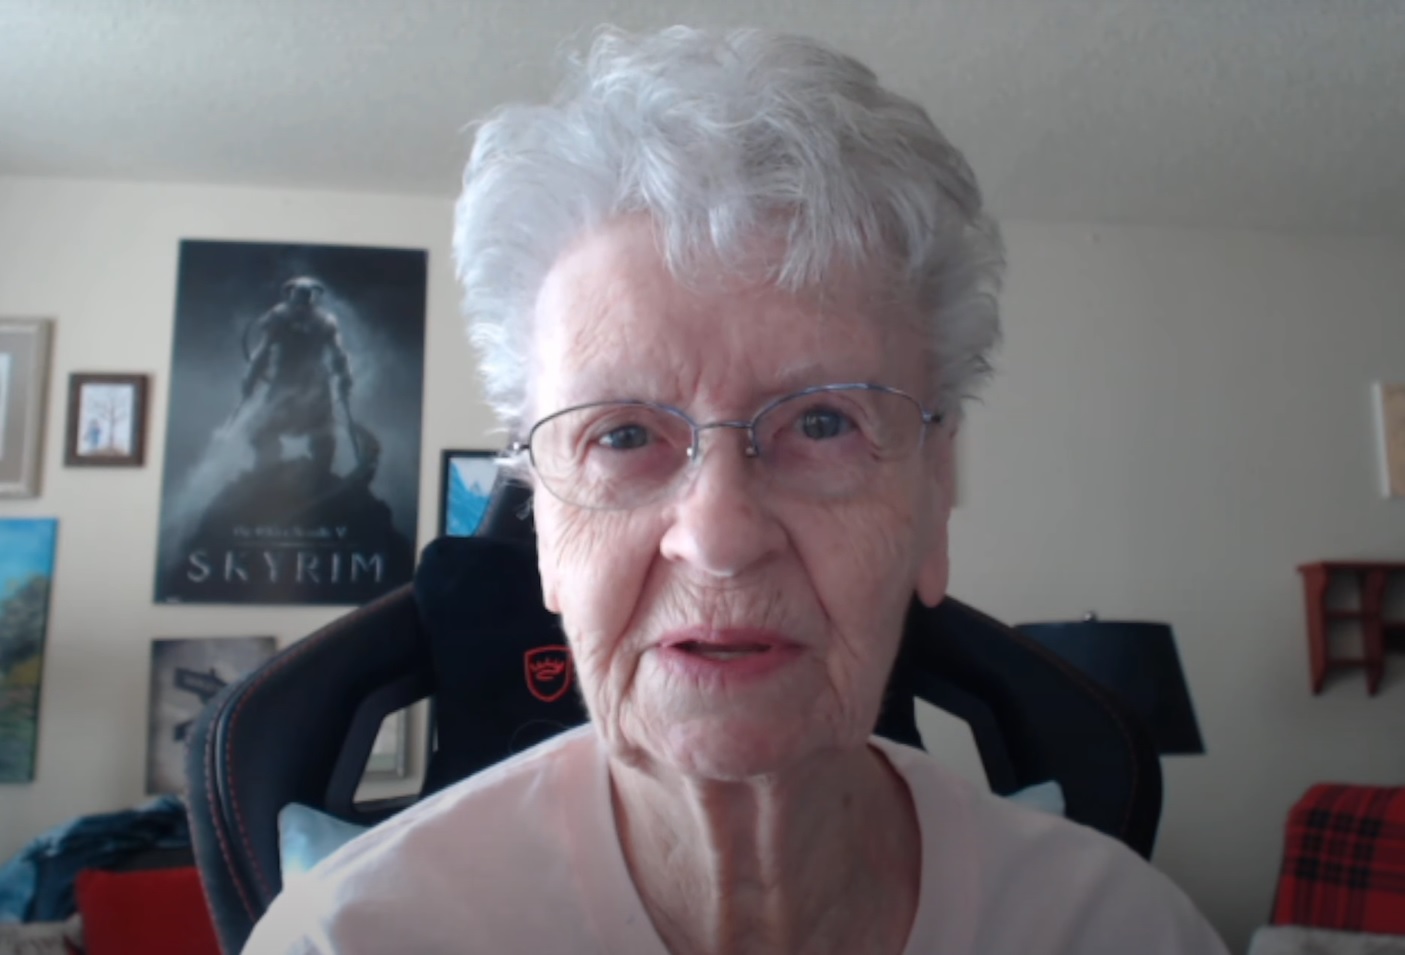 Starfield Skyrim Grandma: YouTuber, Shirley Curry, también conocida como Skyrim Grandma, hablando a la cámara